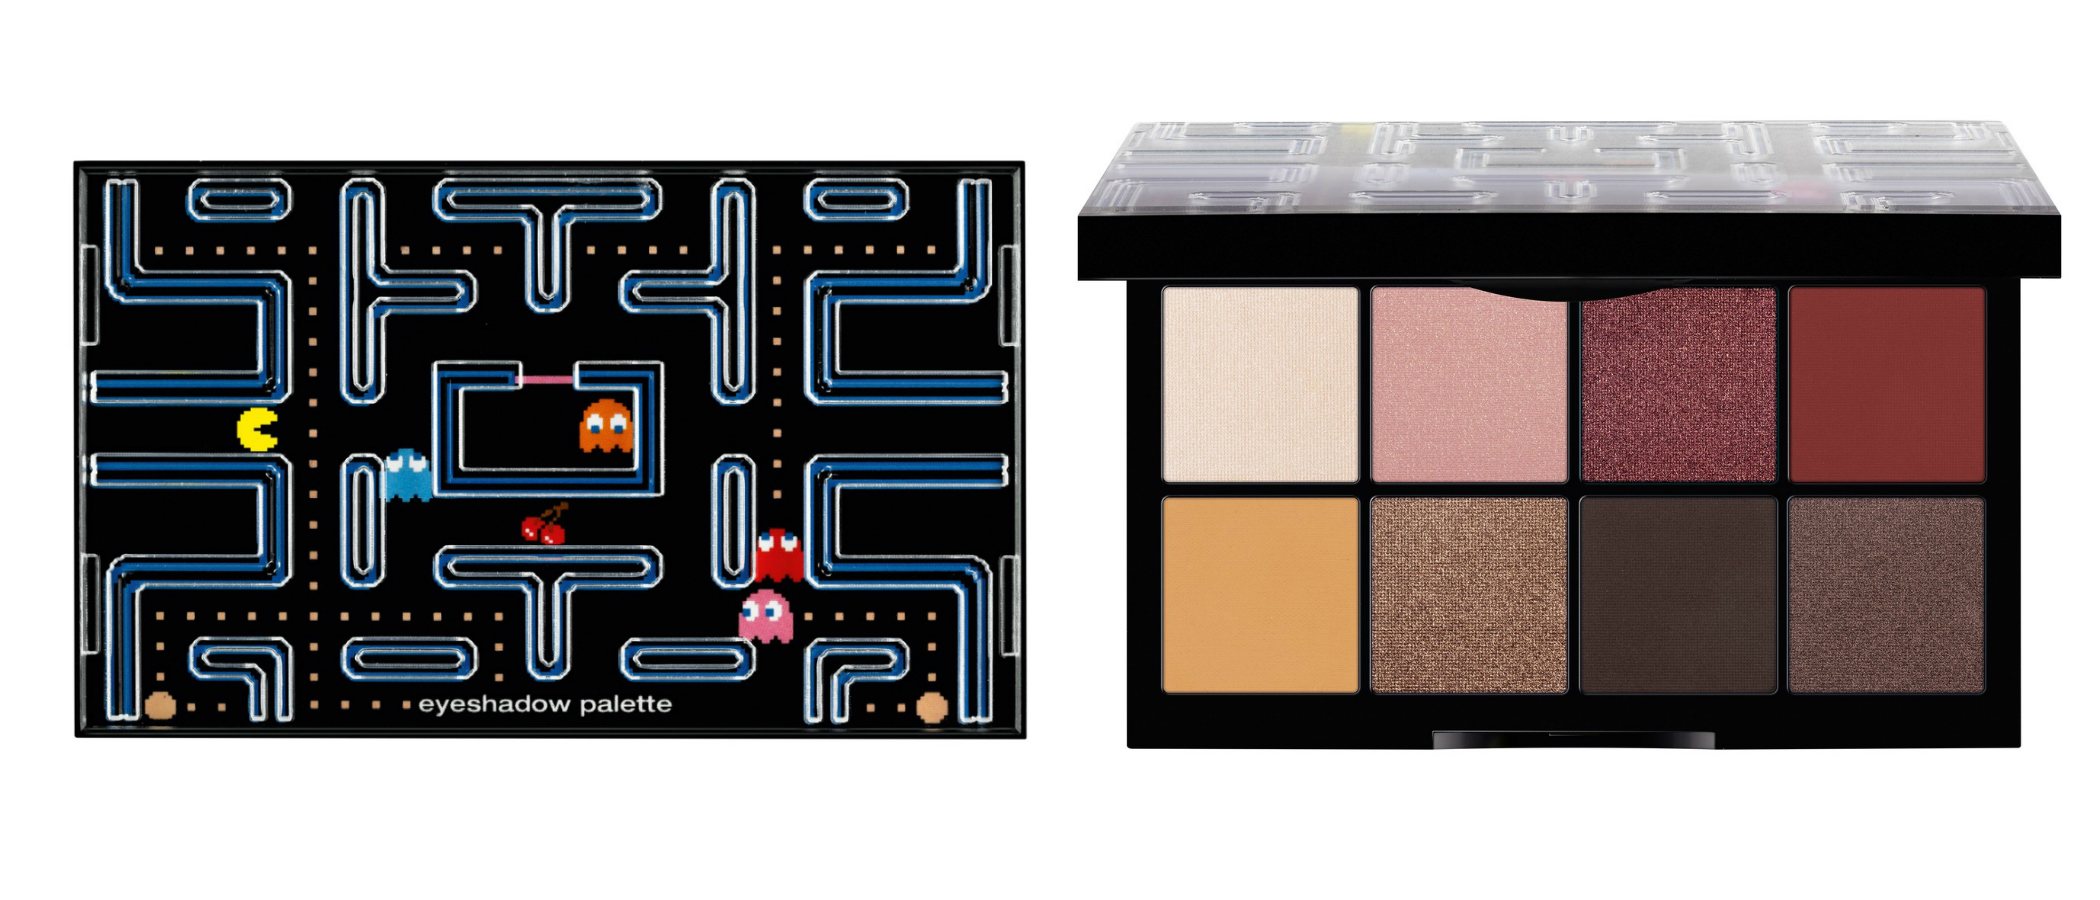 Essence lanza una divertida colección de maquillaje en colaboración con Pac-Man